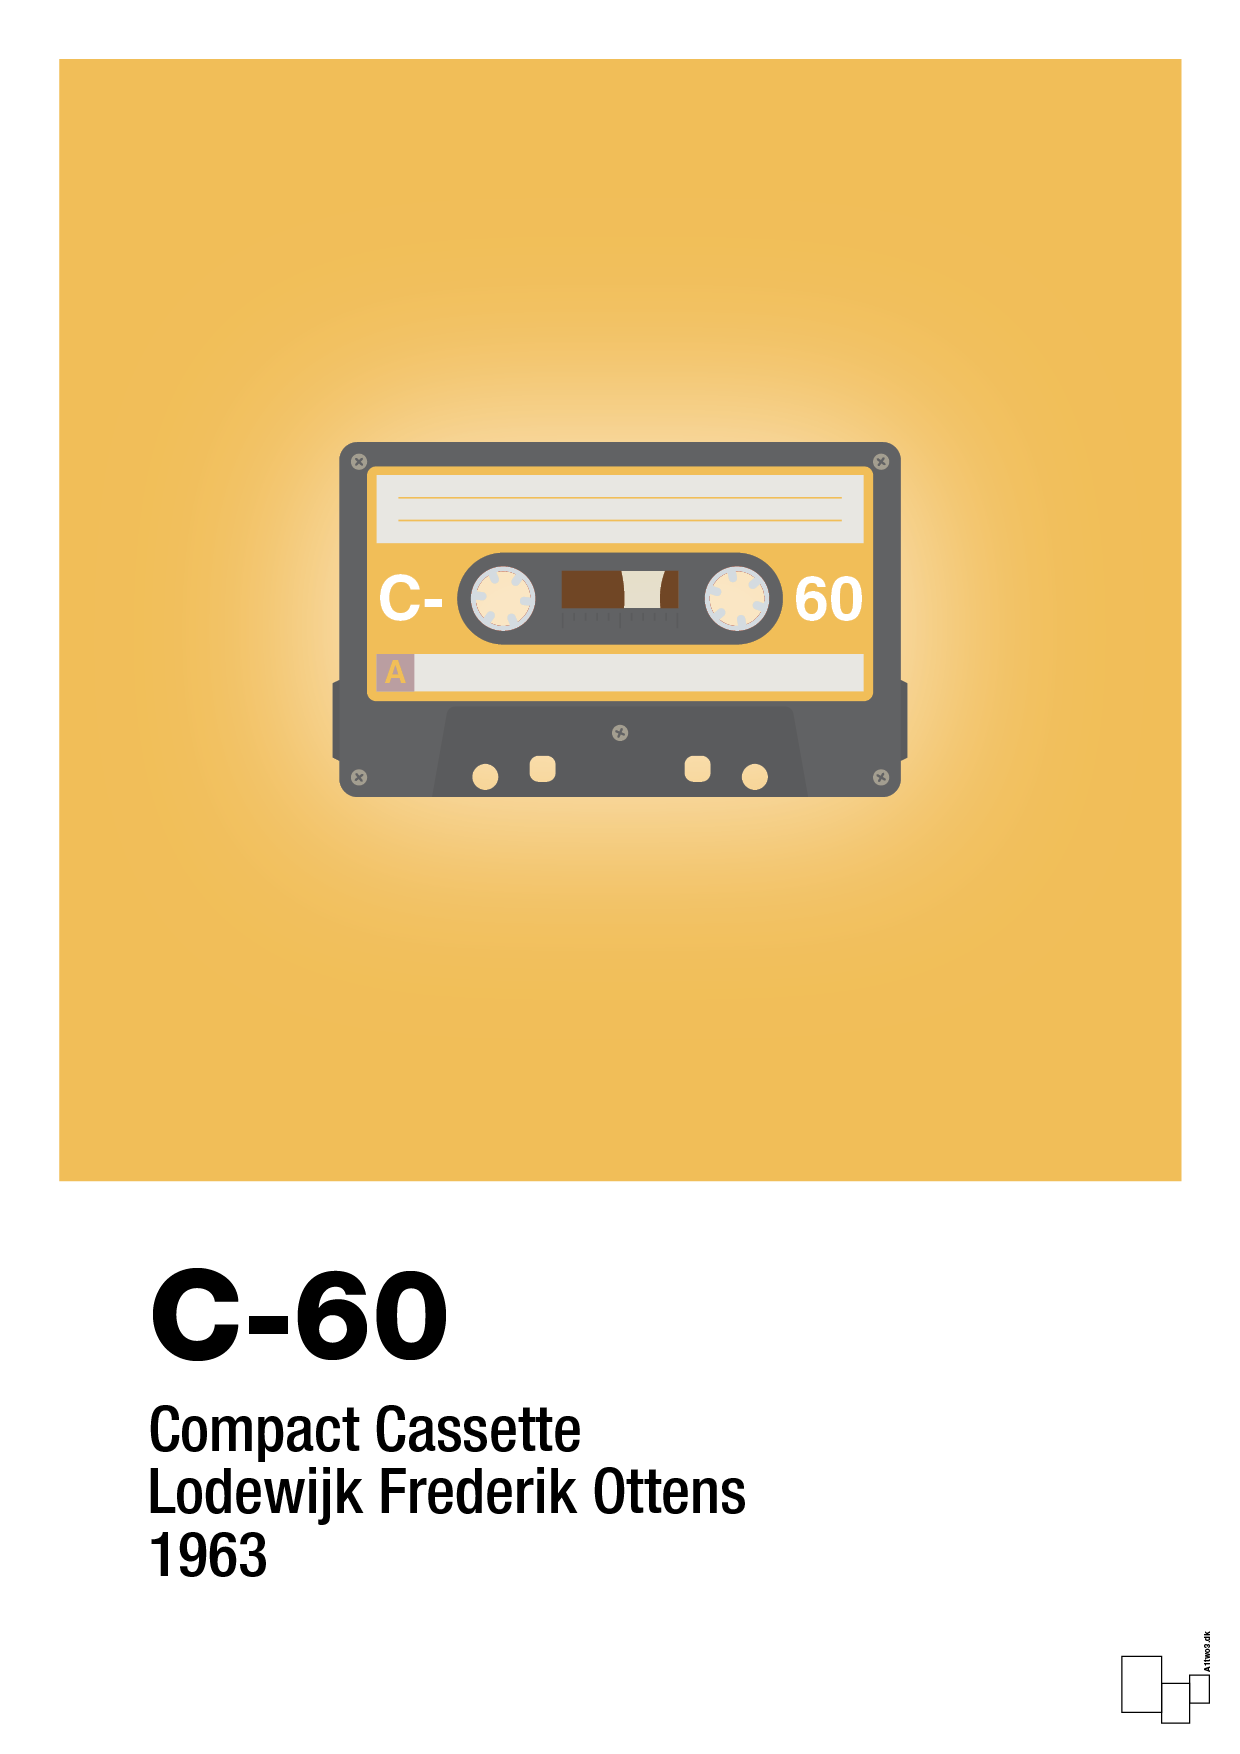 kassettebånd c-60 - Plakat med Grafik i Honeycomb